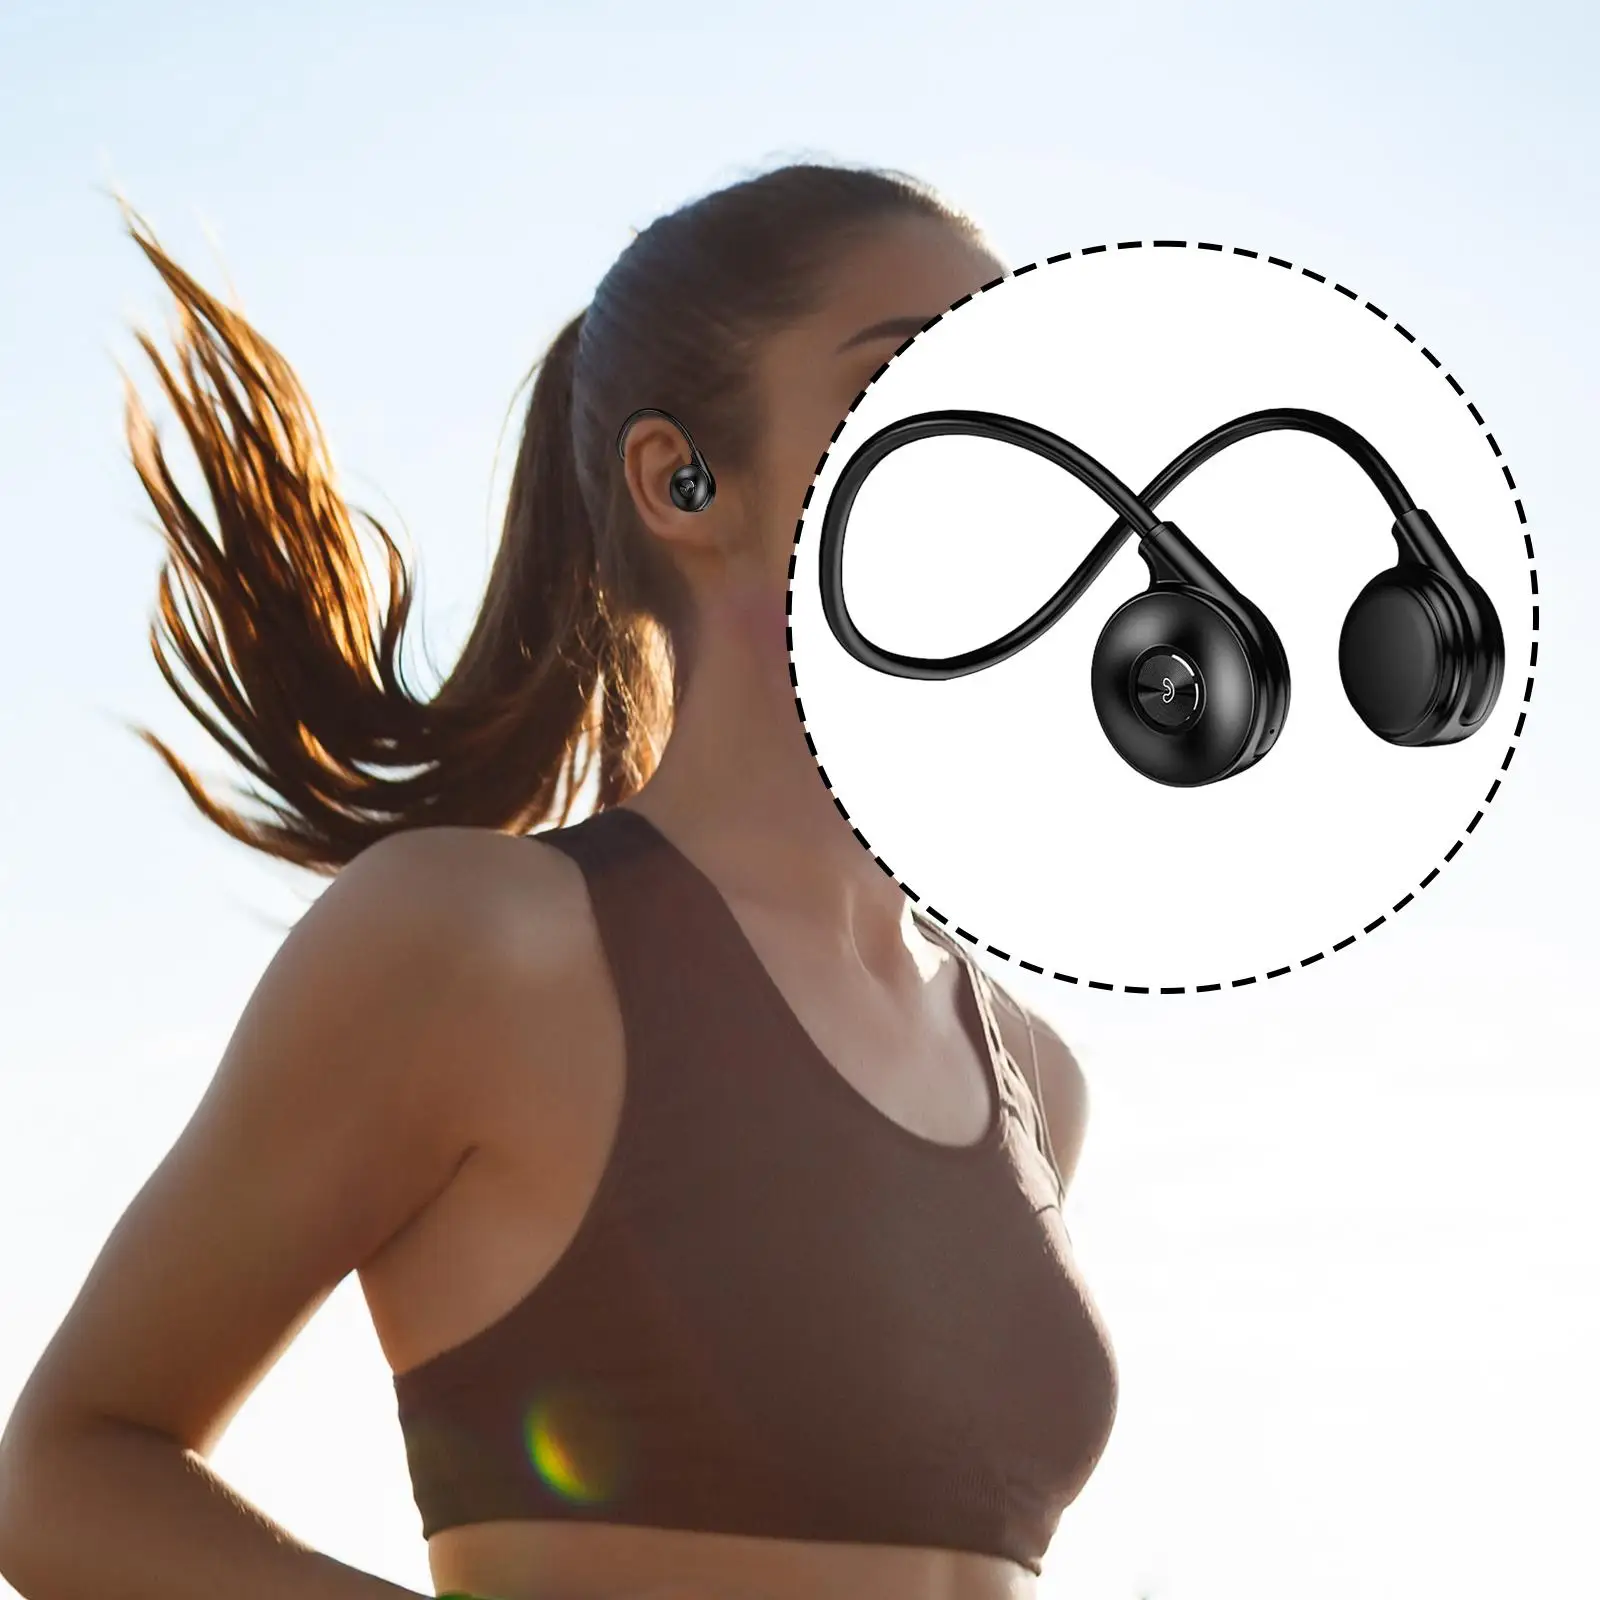 Open Ear Headset IPX5 Waterproof HiFi Sound Sports Earphone for Running Business